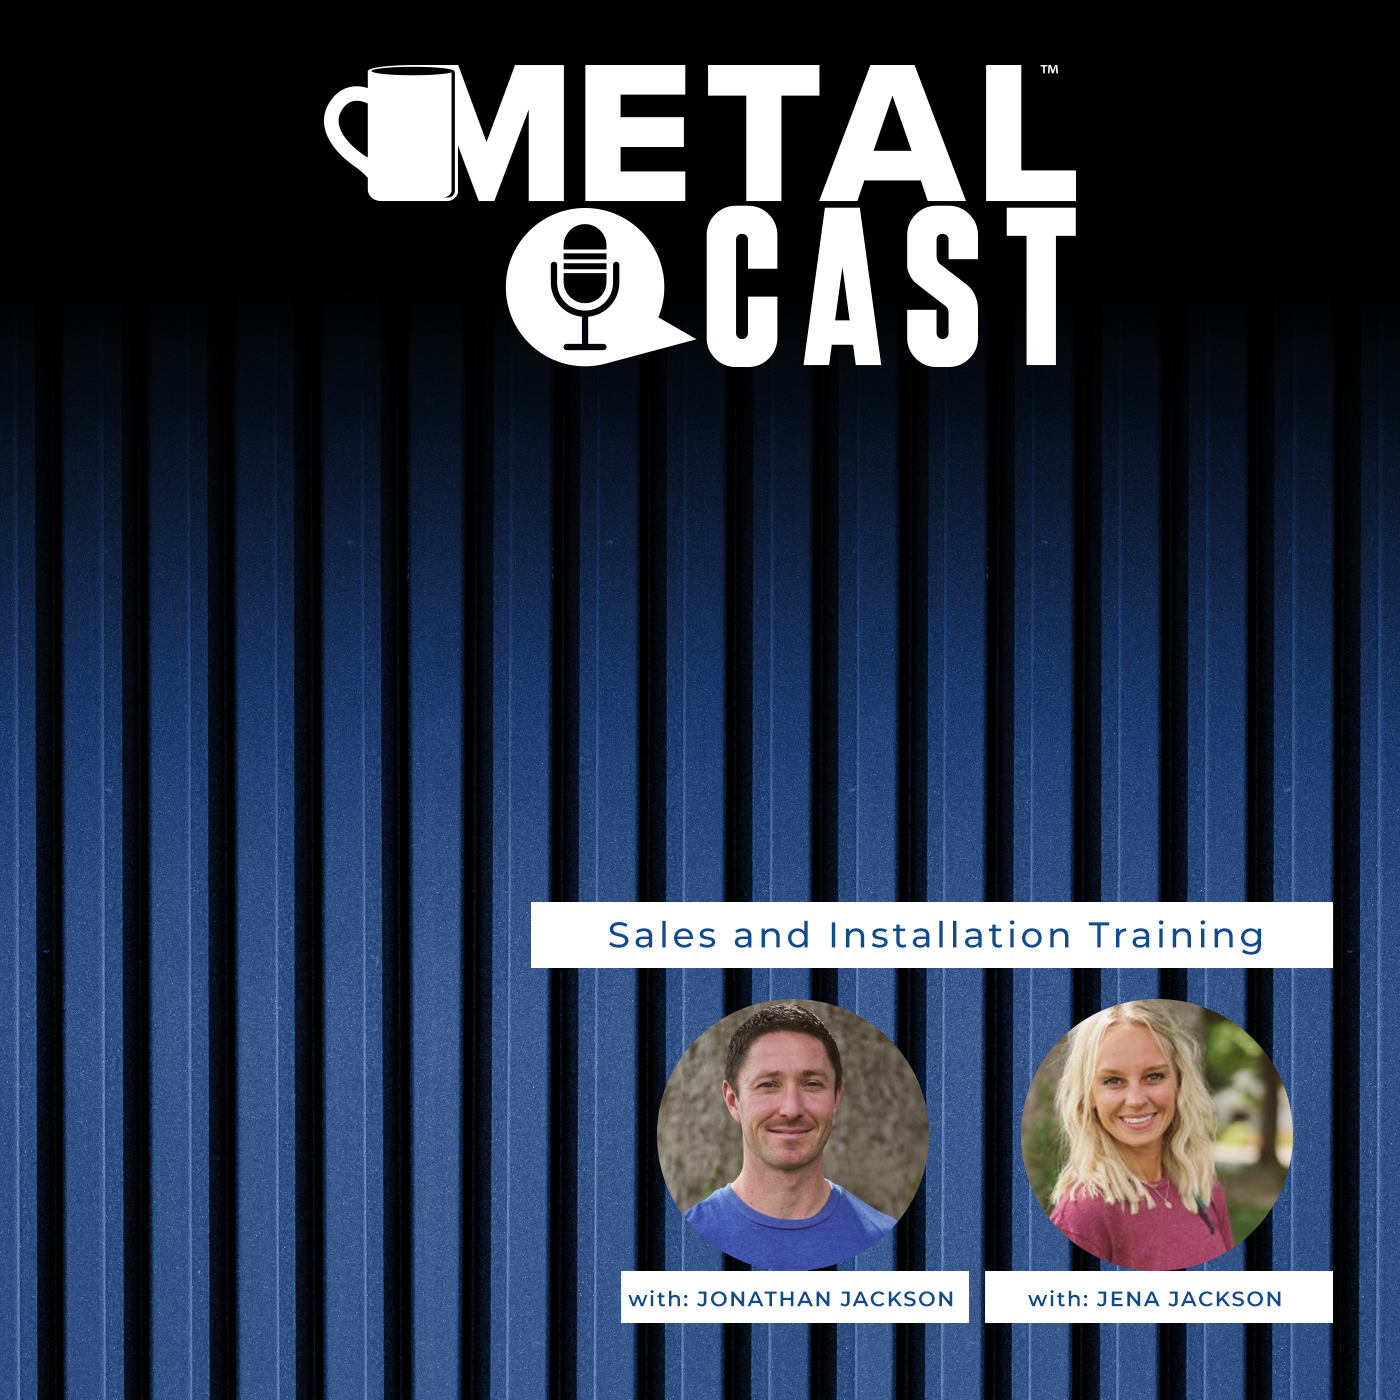 Indiana Metal - MetalCast